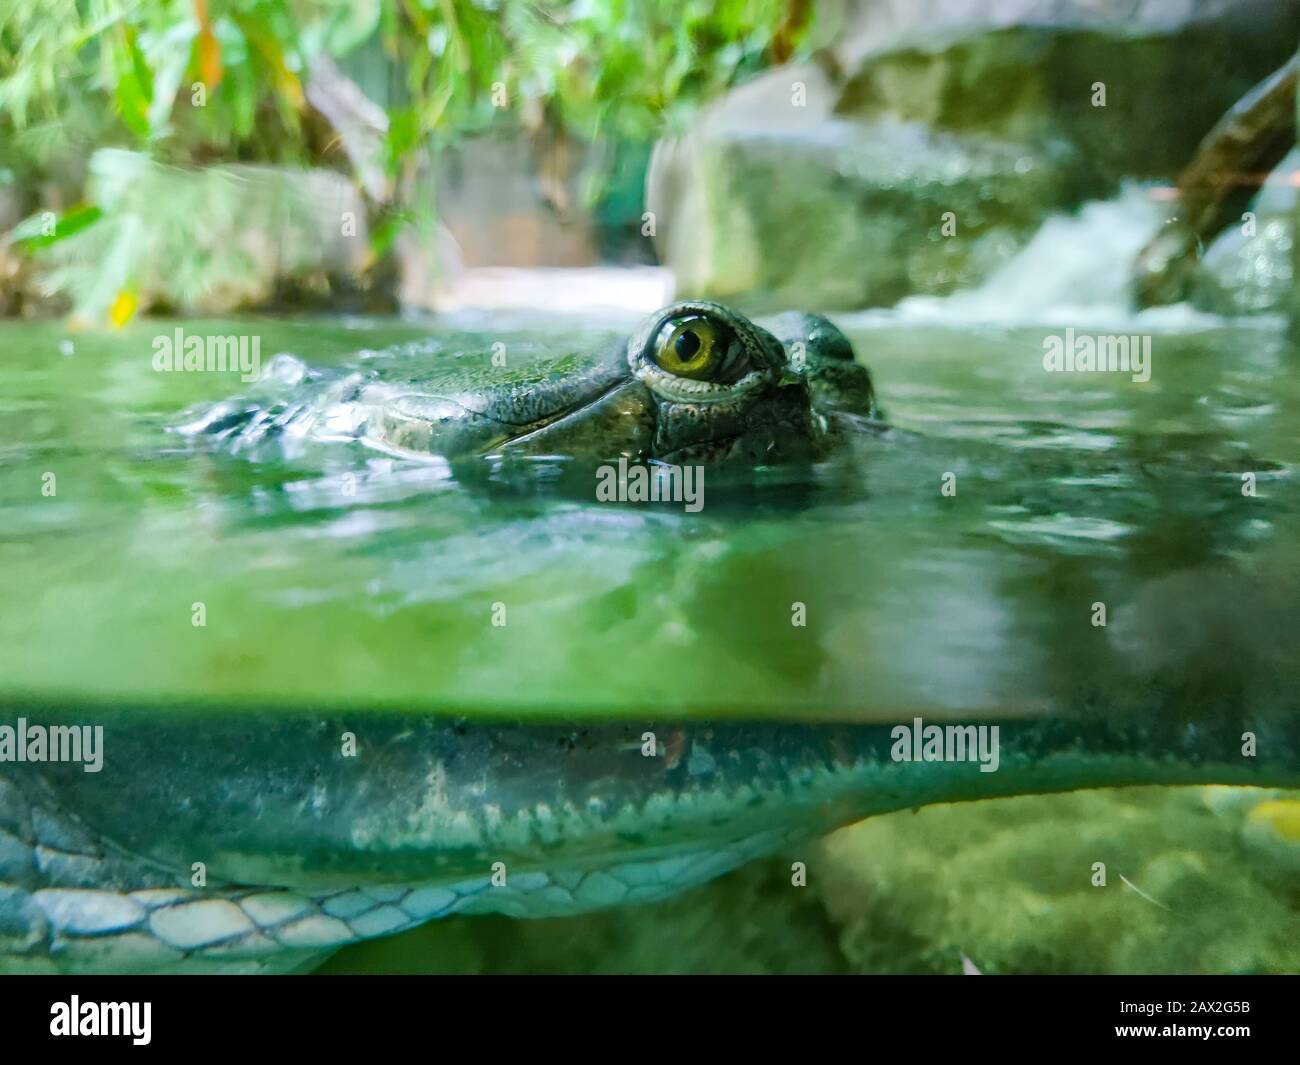 Unterwasserfoto von grünem Krokodil mit grünen Augen. Es ist ein Nahaufnahme von Wildtieren. Sein Kopf liegt über Wasser und sein Körper steht unter Wasser. Stockfoto